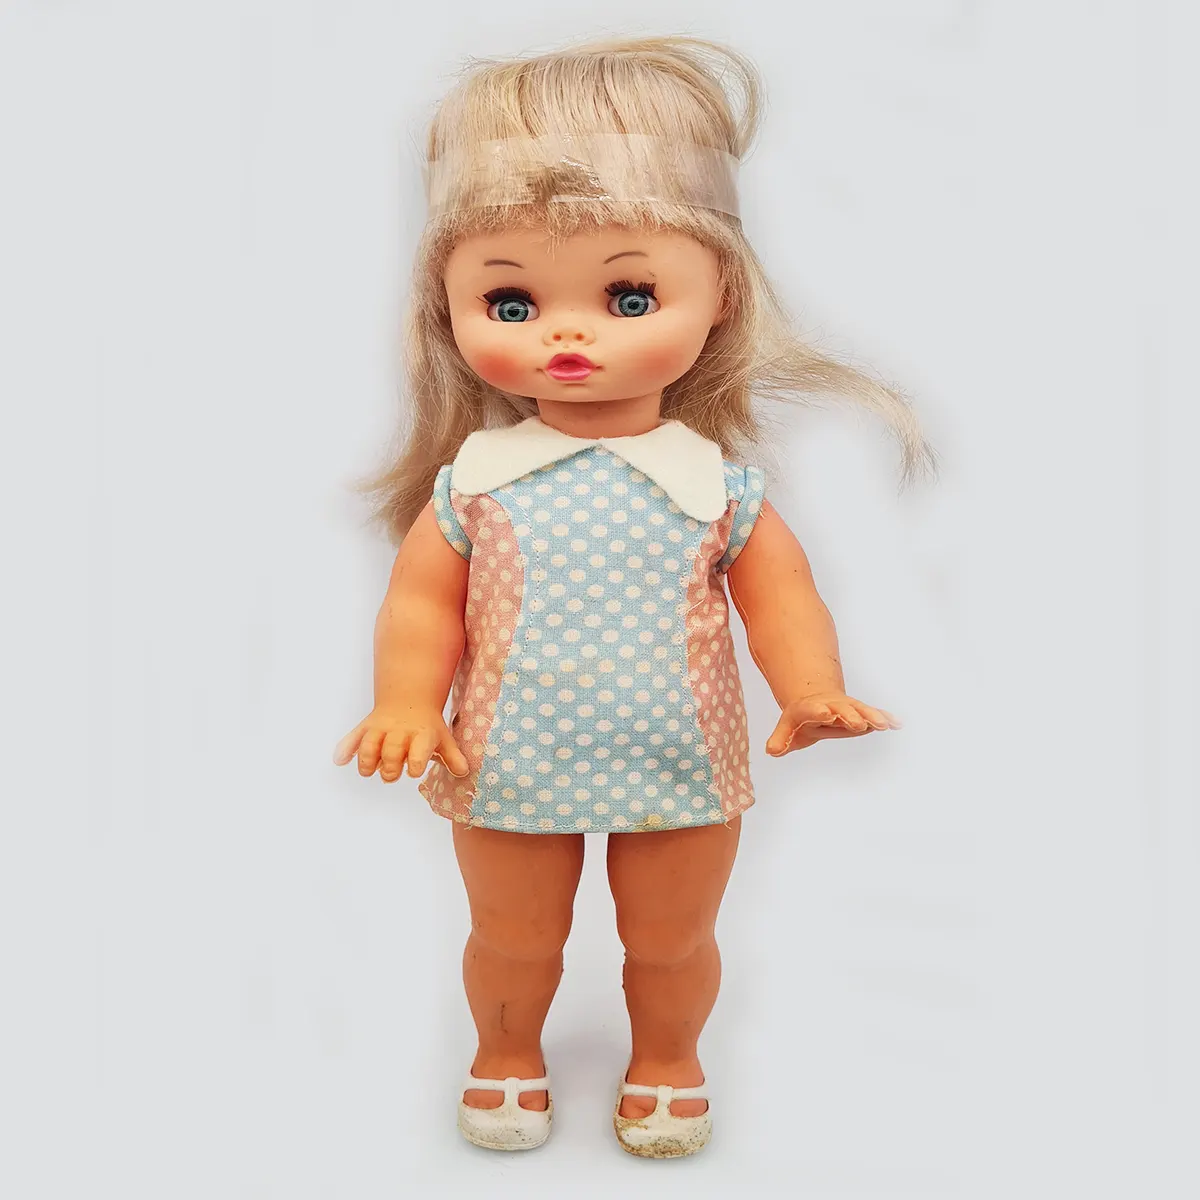 Cabar Vintage Doll